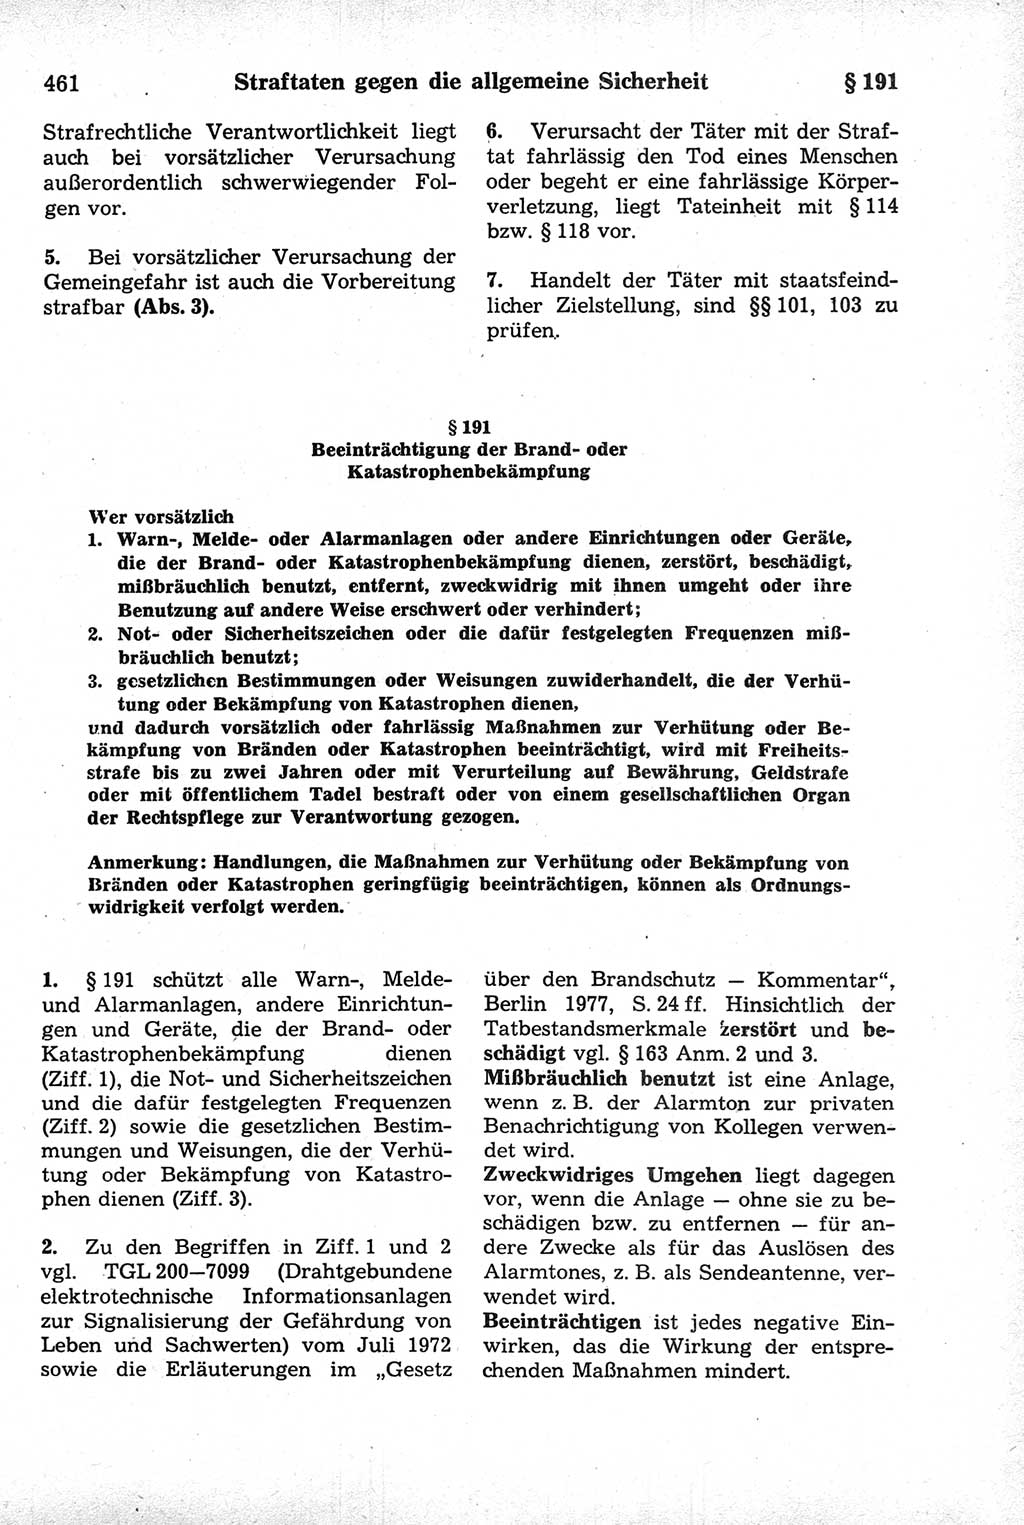 Strafrecht der Deutschen Demokratischen Republik (DDR), Kommentar zum Strafgesetzbuch (StGB) 1981, Seite 461 (Strafr. DDR Komm. StGB 1981, S. 461)